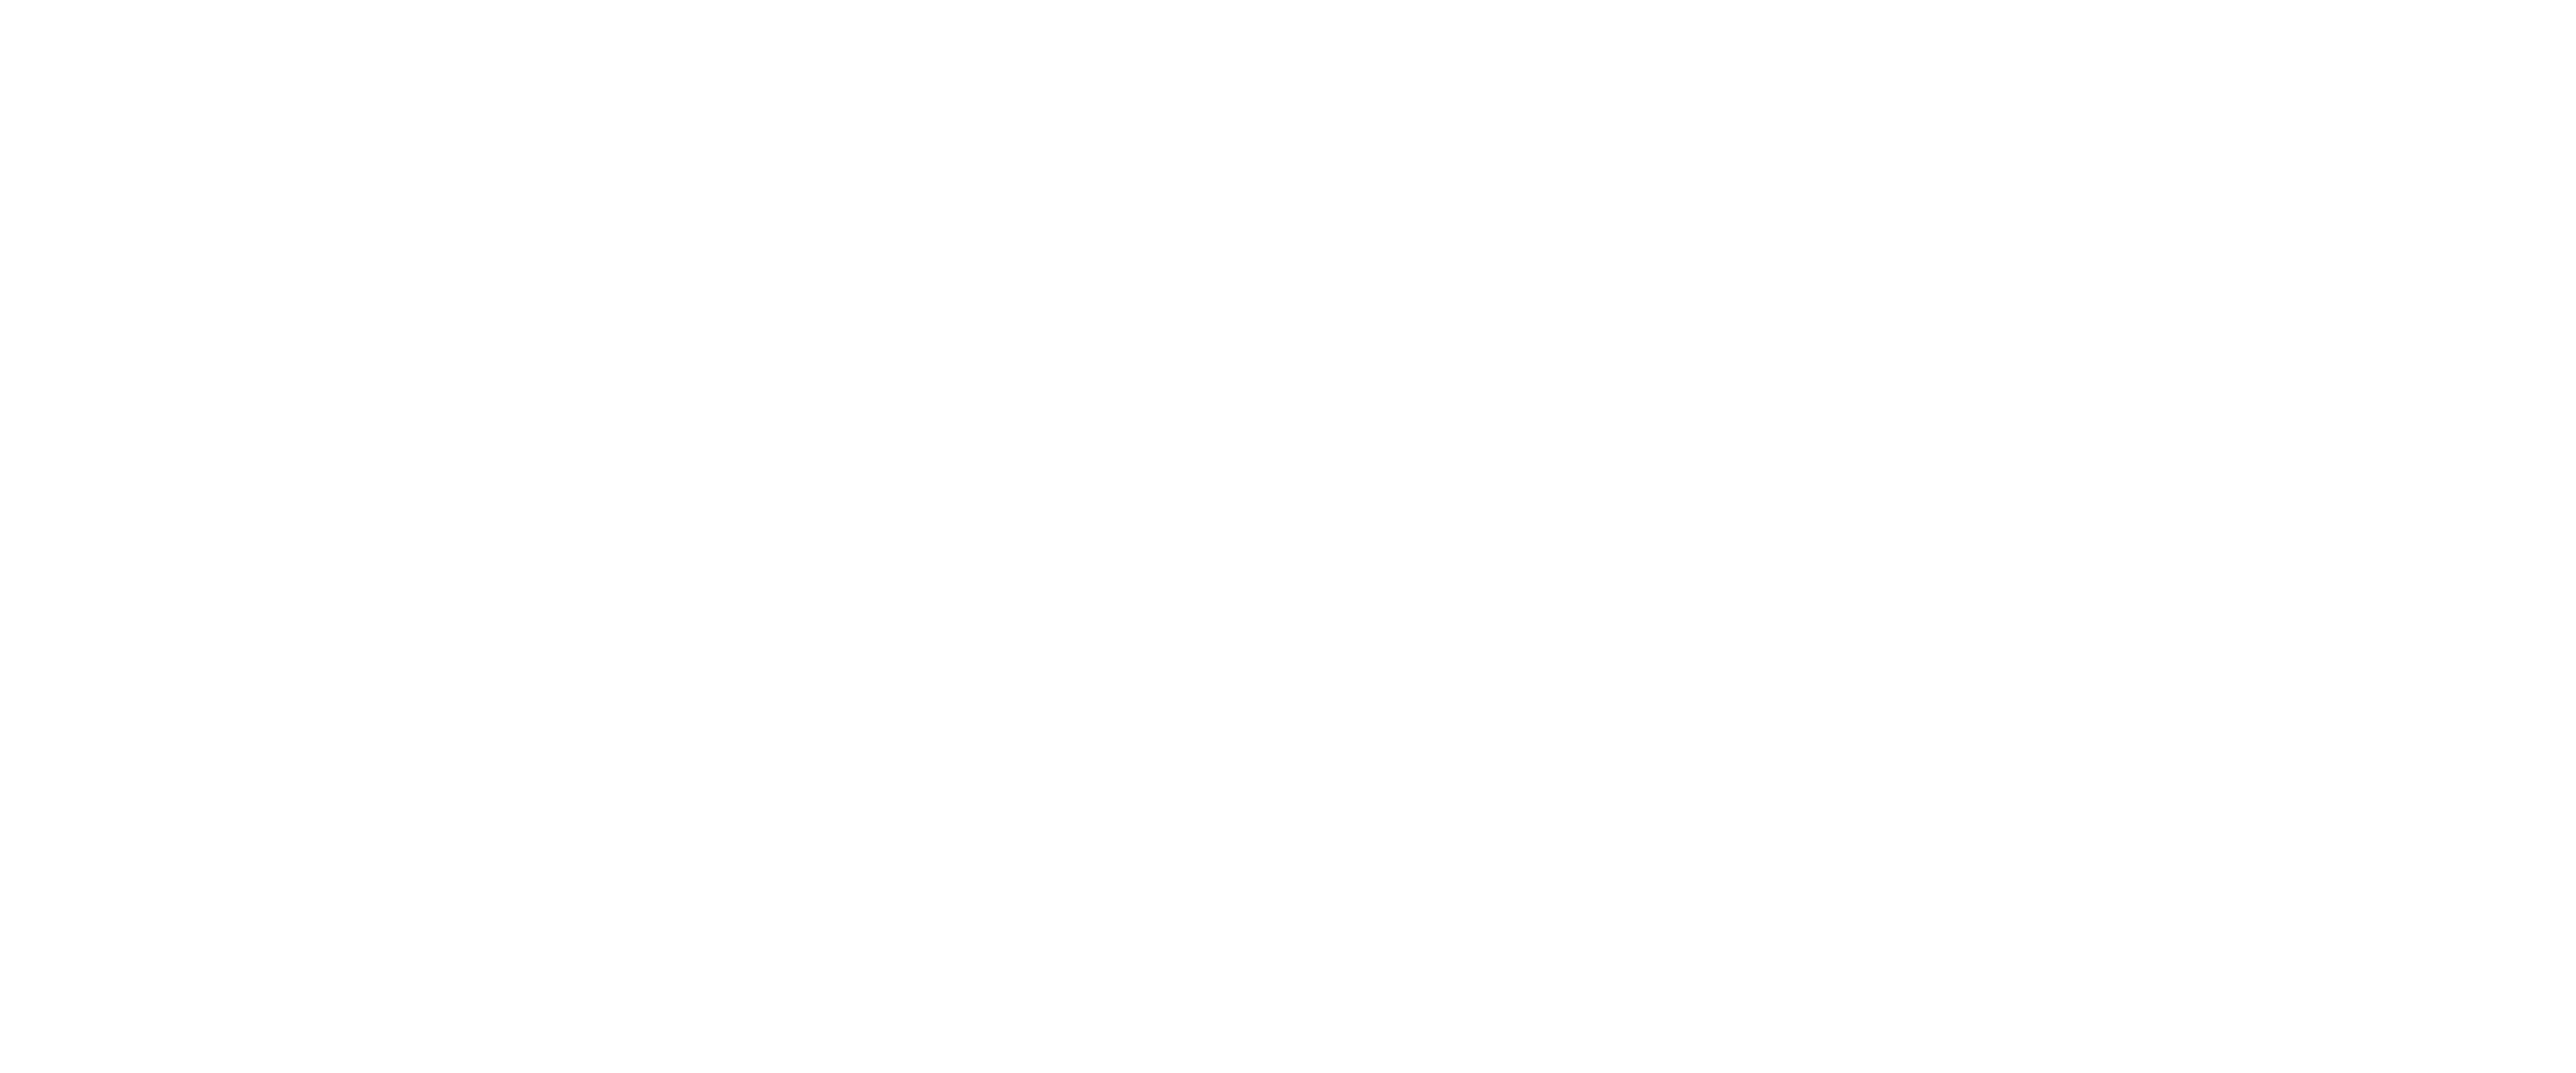 white tik tok logo